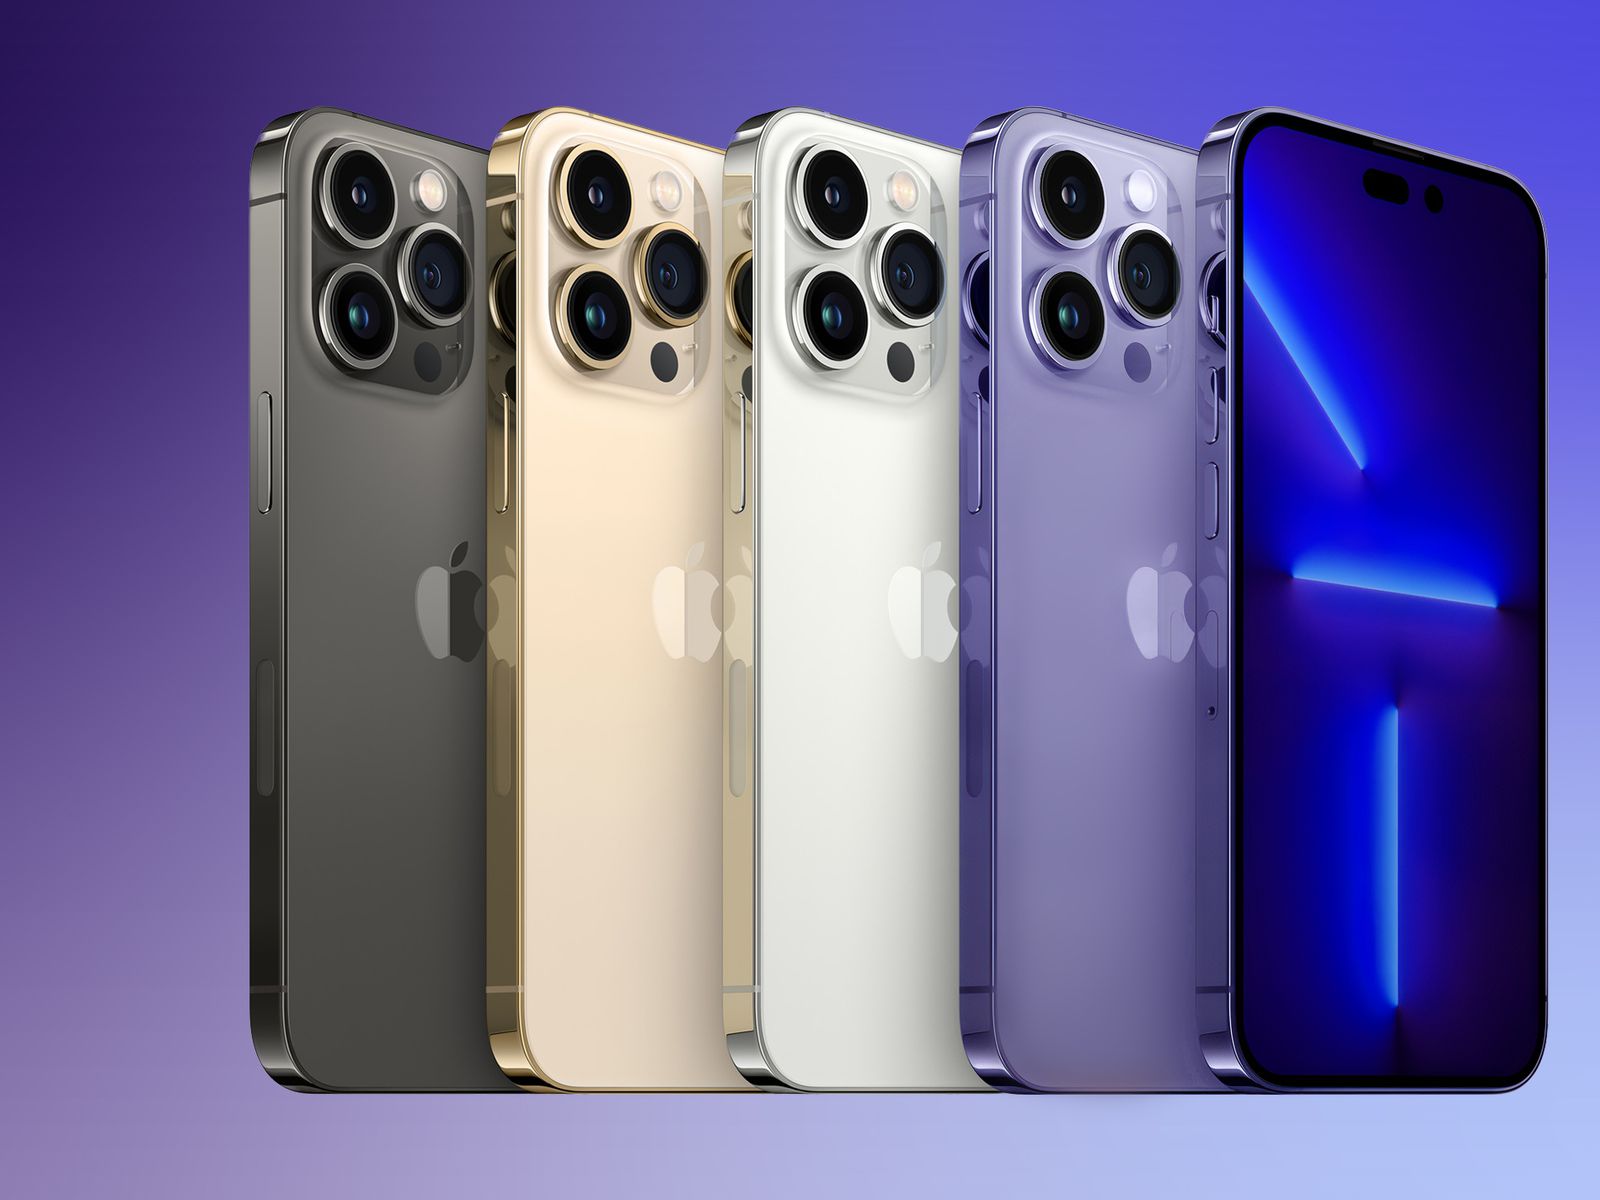 Lựa chọn màu sắc của iPhone 14 Pro Max sẽ khiến bạn phải mê mẩn. Với nhiều tùy chọn cho bạn chọn lựa, từ truyền thống đến những gam màu táo bạo, bạn chắc chắn tìm được màu sắc hoàn hảo phù hợp với phong cách của mình. Hãy xem hình ảnh để thấy sự lựa chọn đa dạng của sản phẩm này.